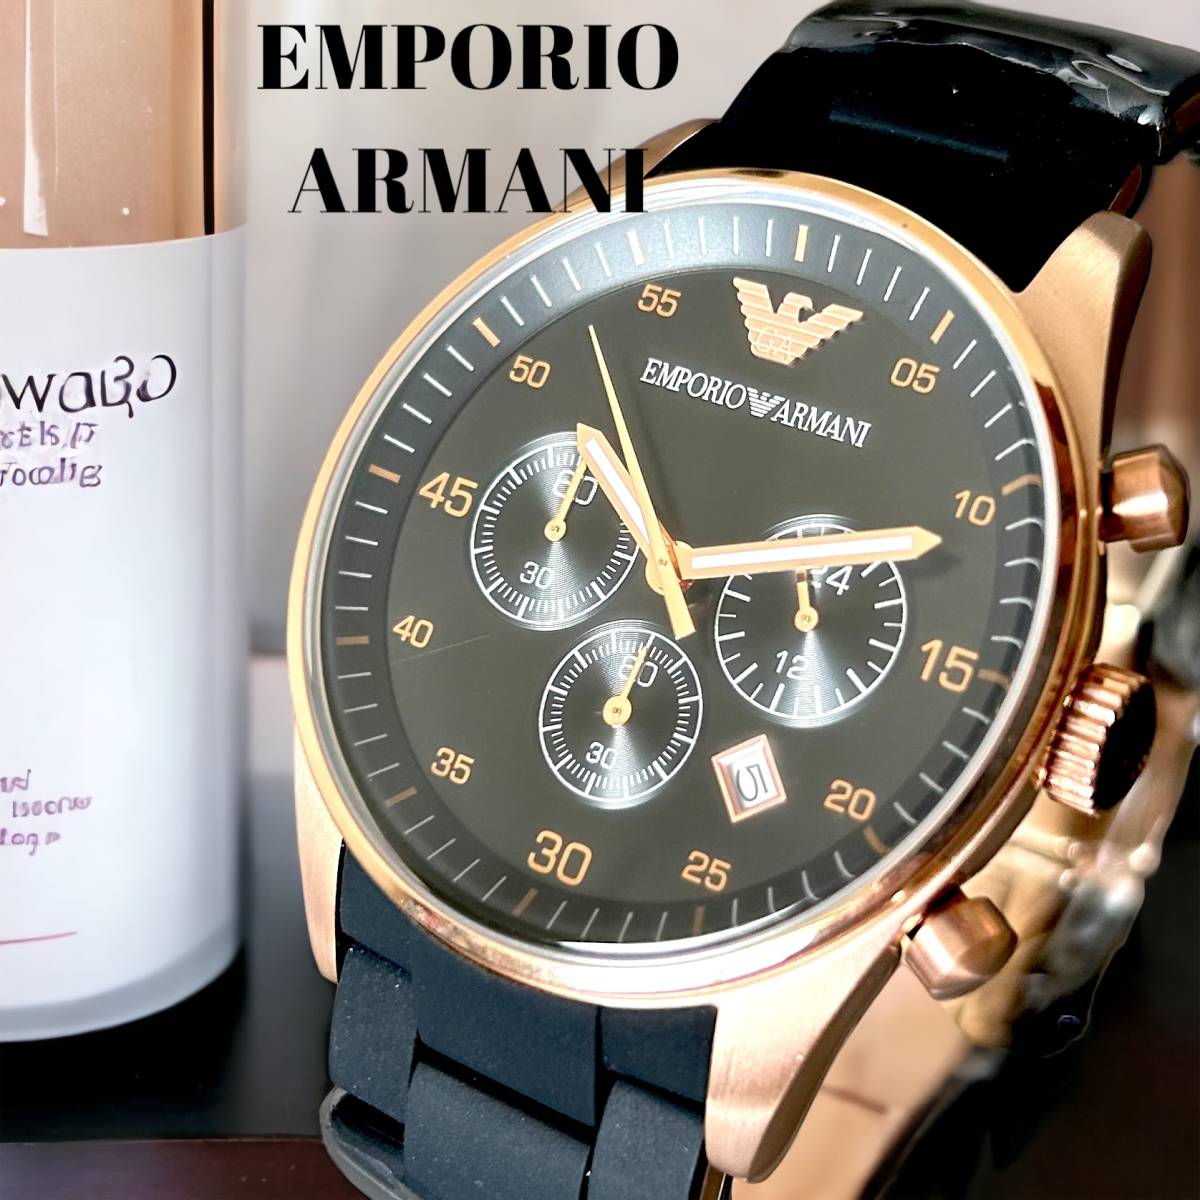 【新品即納】エンポリオアルマーニ EMPORIO ARMANI AR5905 クォーツ クロノグラフ メンズ腕時計 男性用 ブラック ローズゴールド B03182